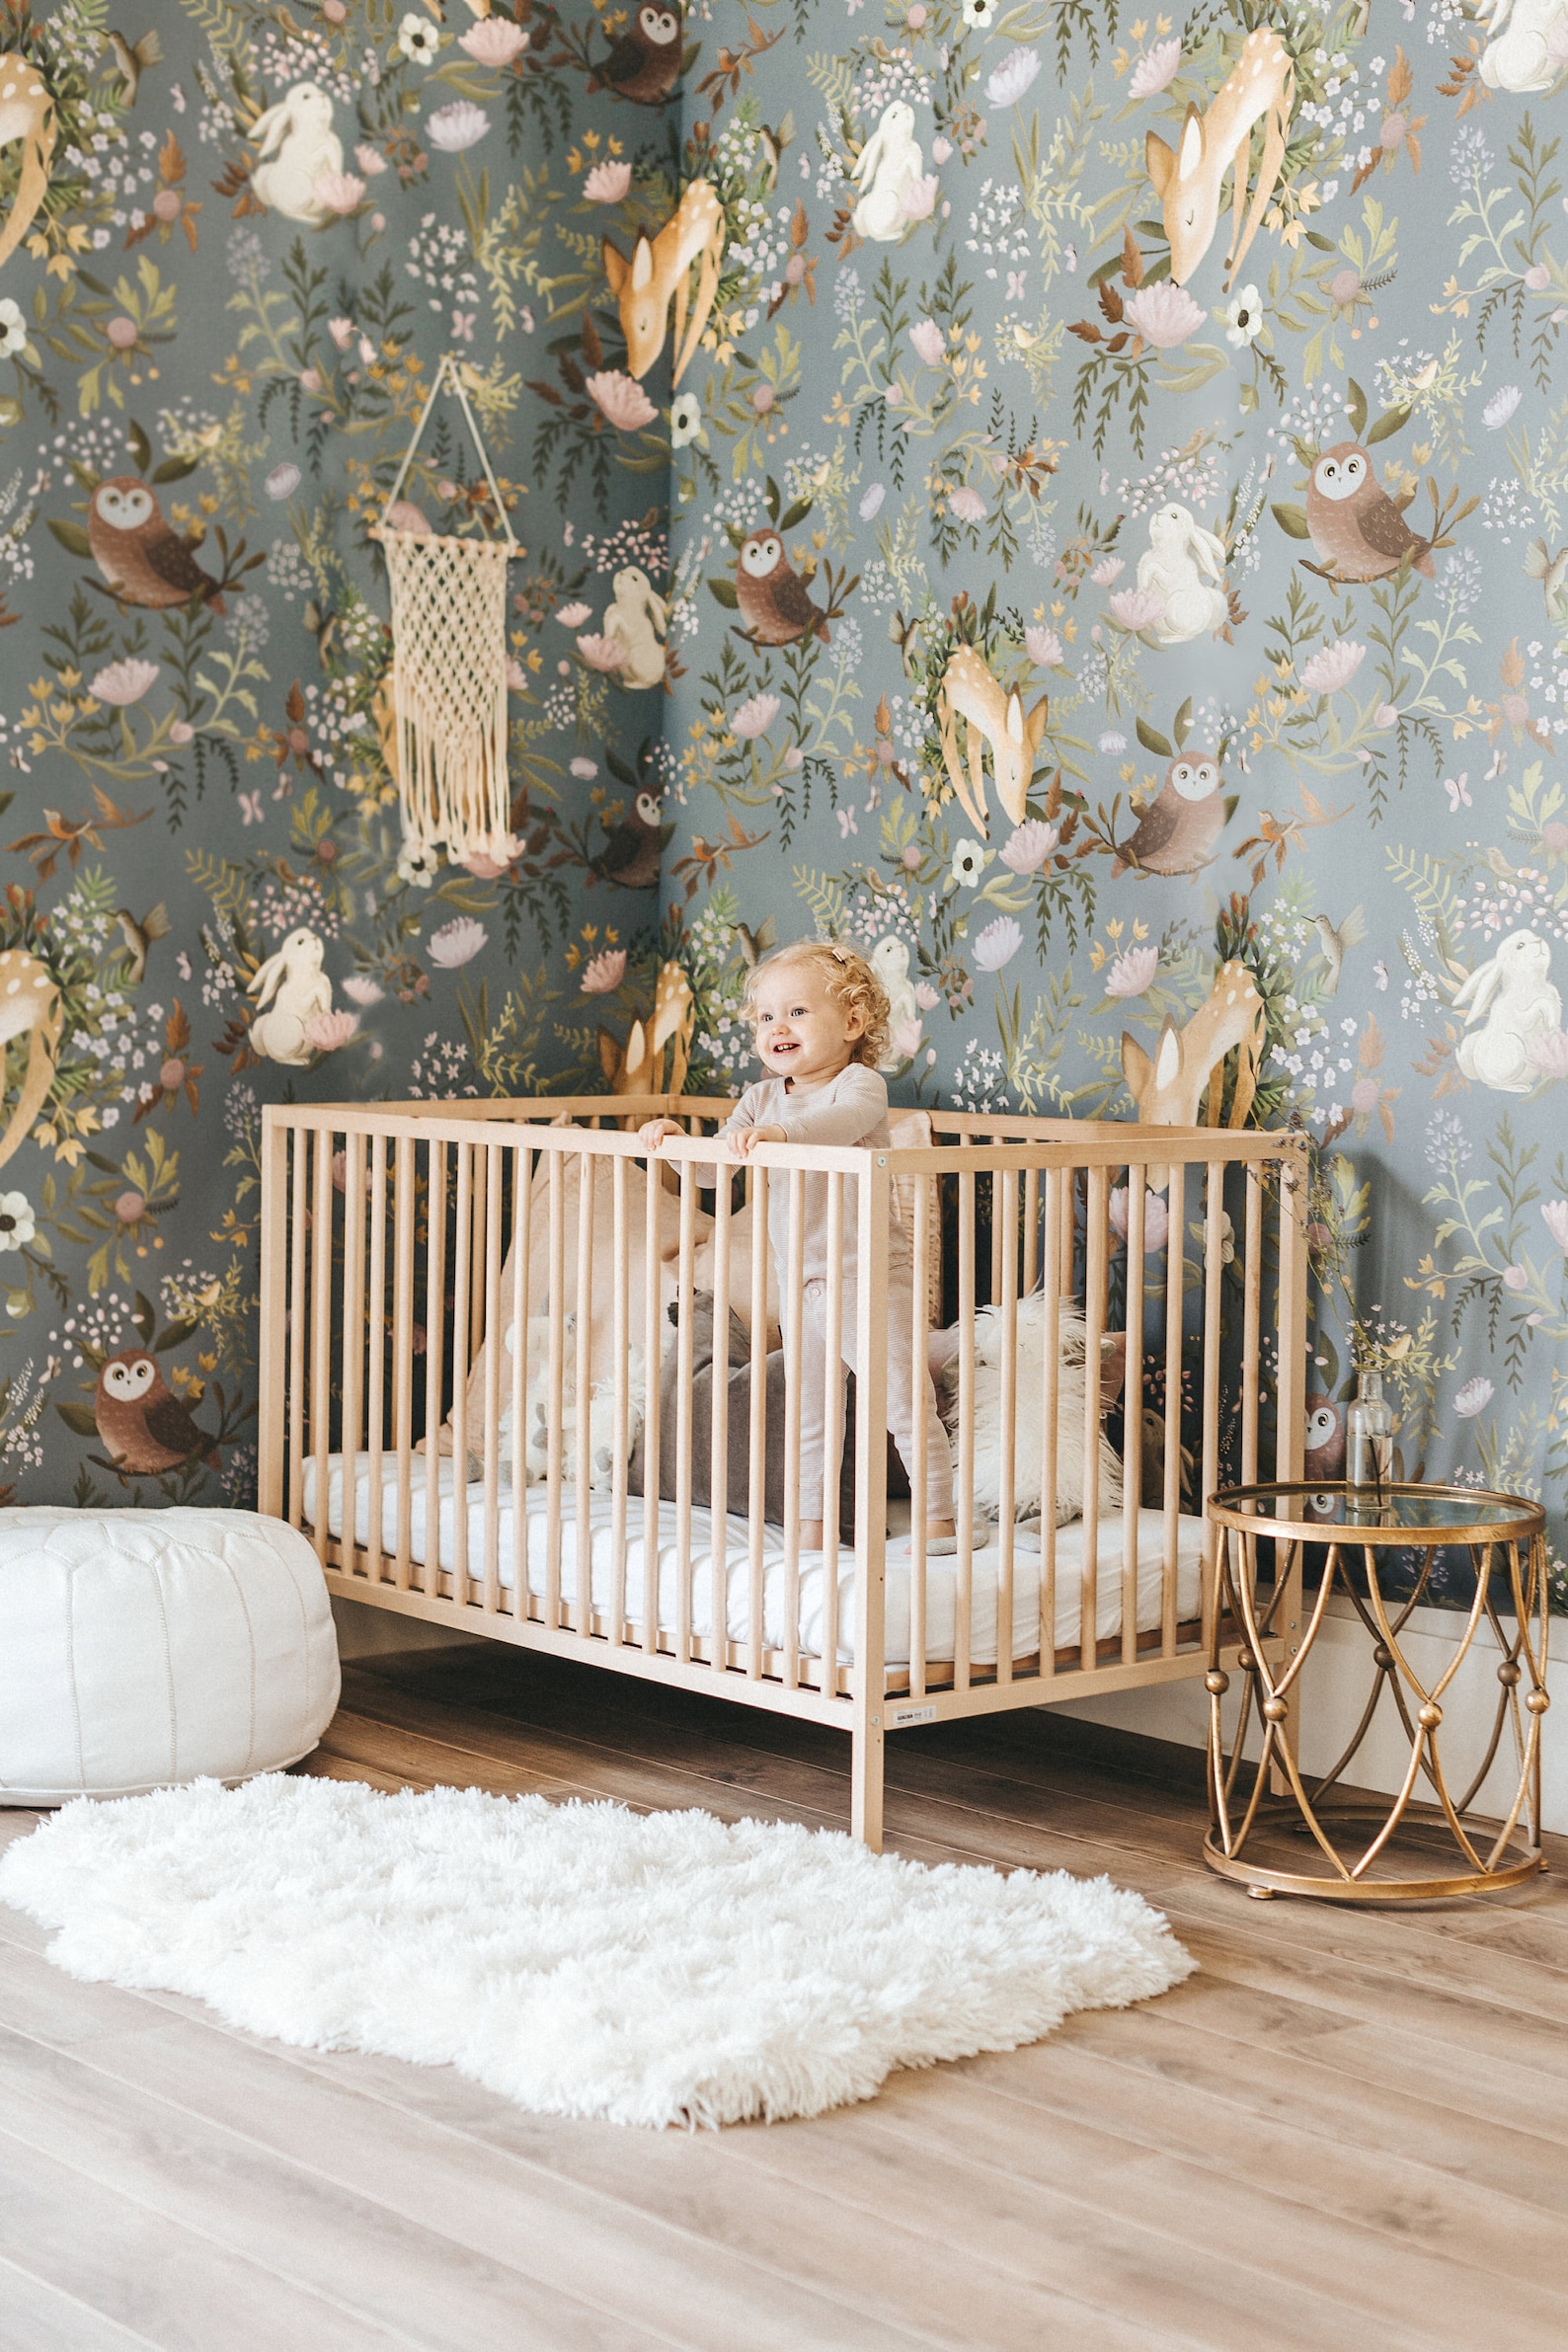 boiler spannend gemakkelijk te kwetsen Prachtig behang voor in de babykamer | HomeDeco.nl